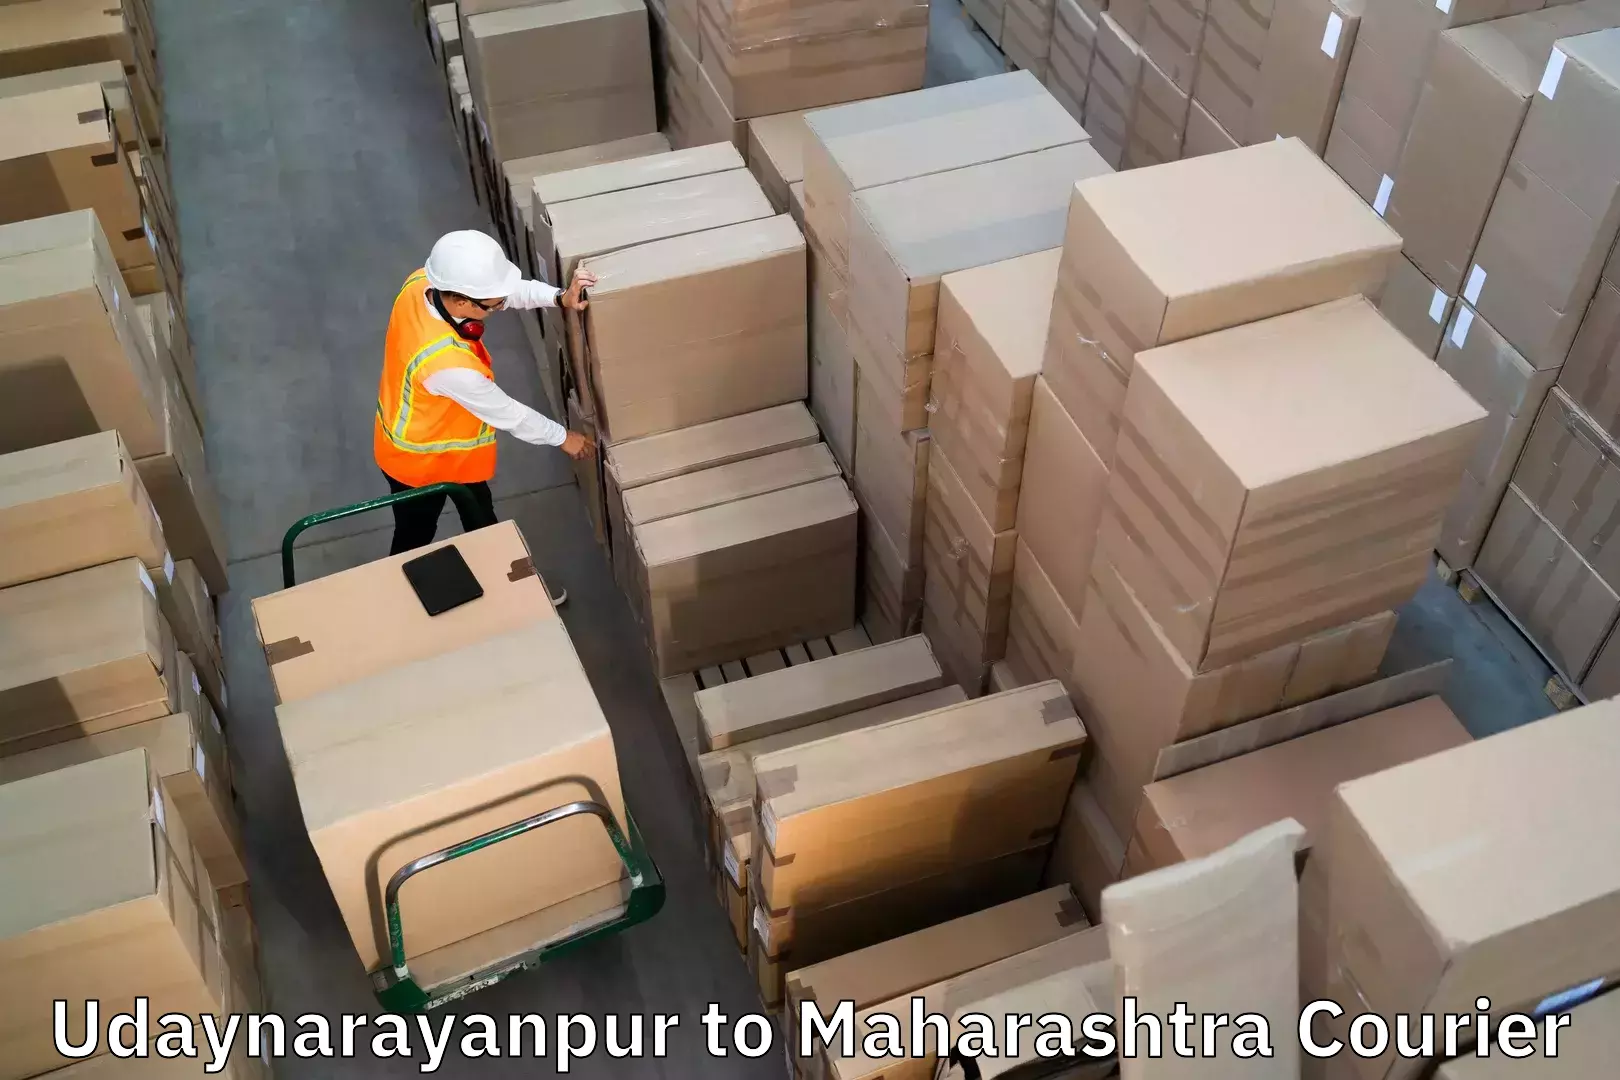 Baggage relocation service Udaynarayanpur to Savitribai Phule Pune University